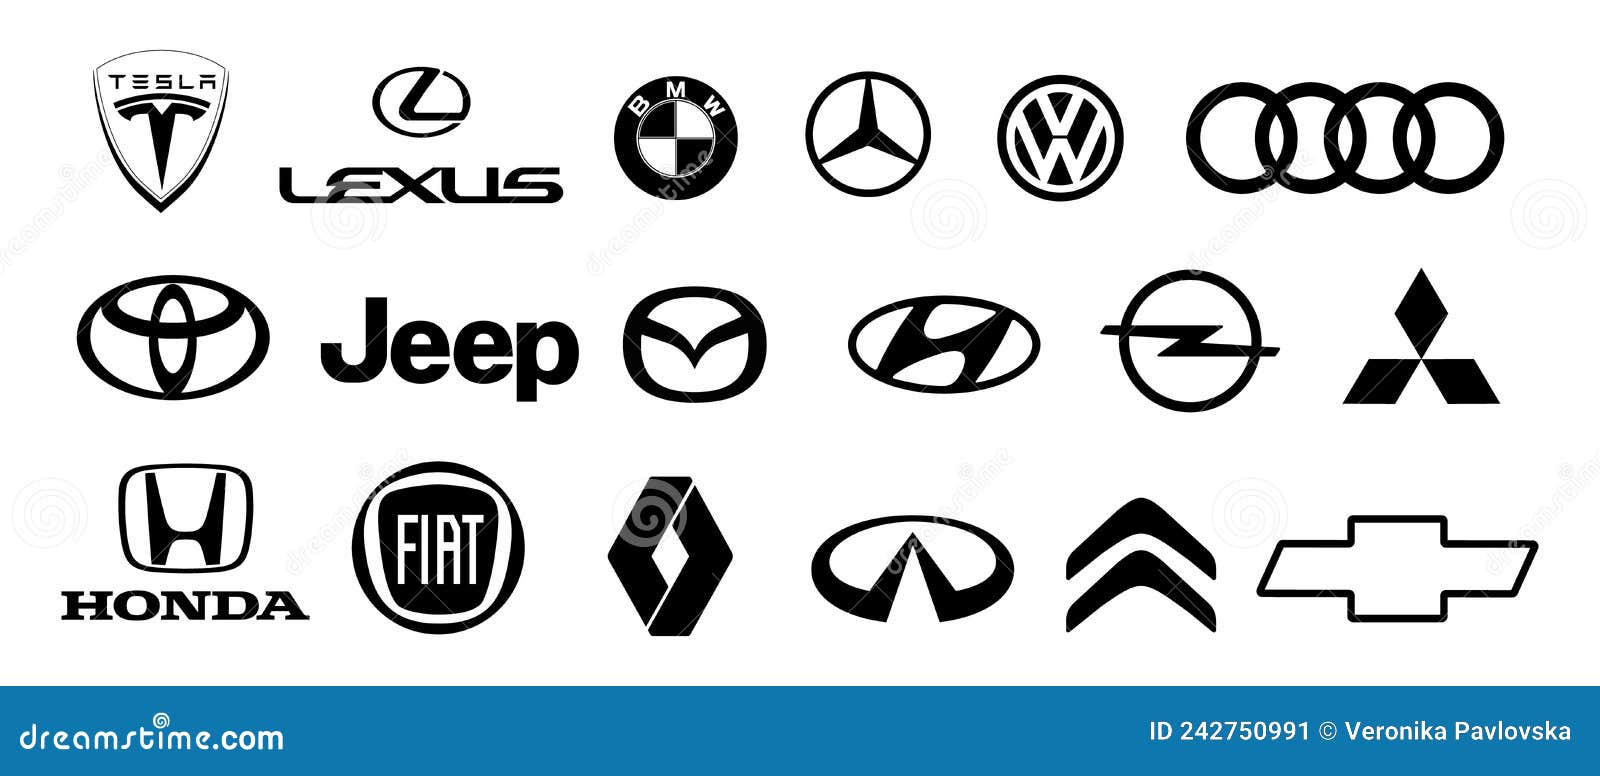 Logo of Cars Brand Set: Tesla, Lexus, Volkswagen, Bmw, Mercedes ...